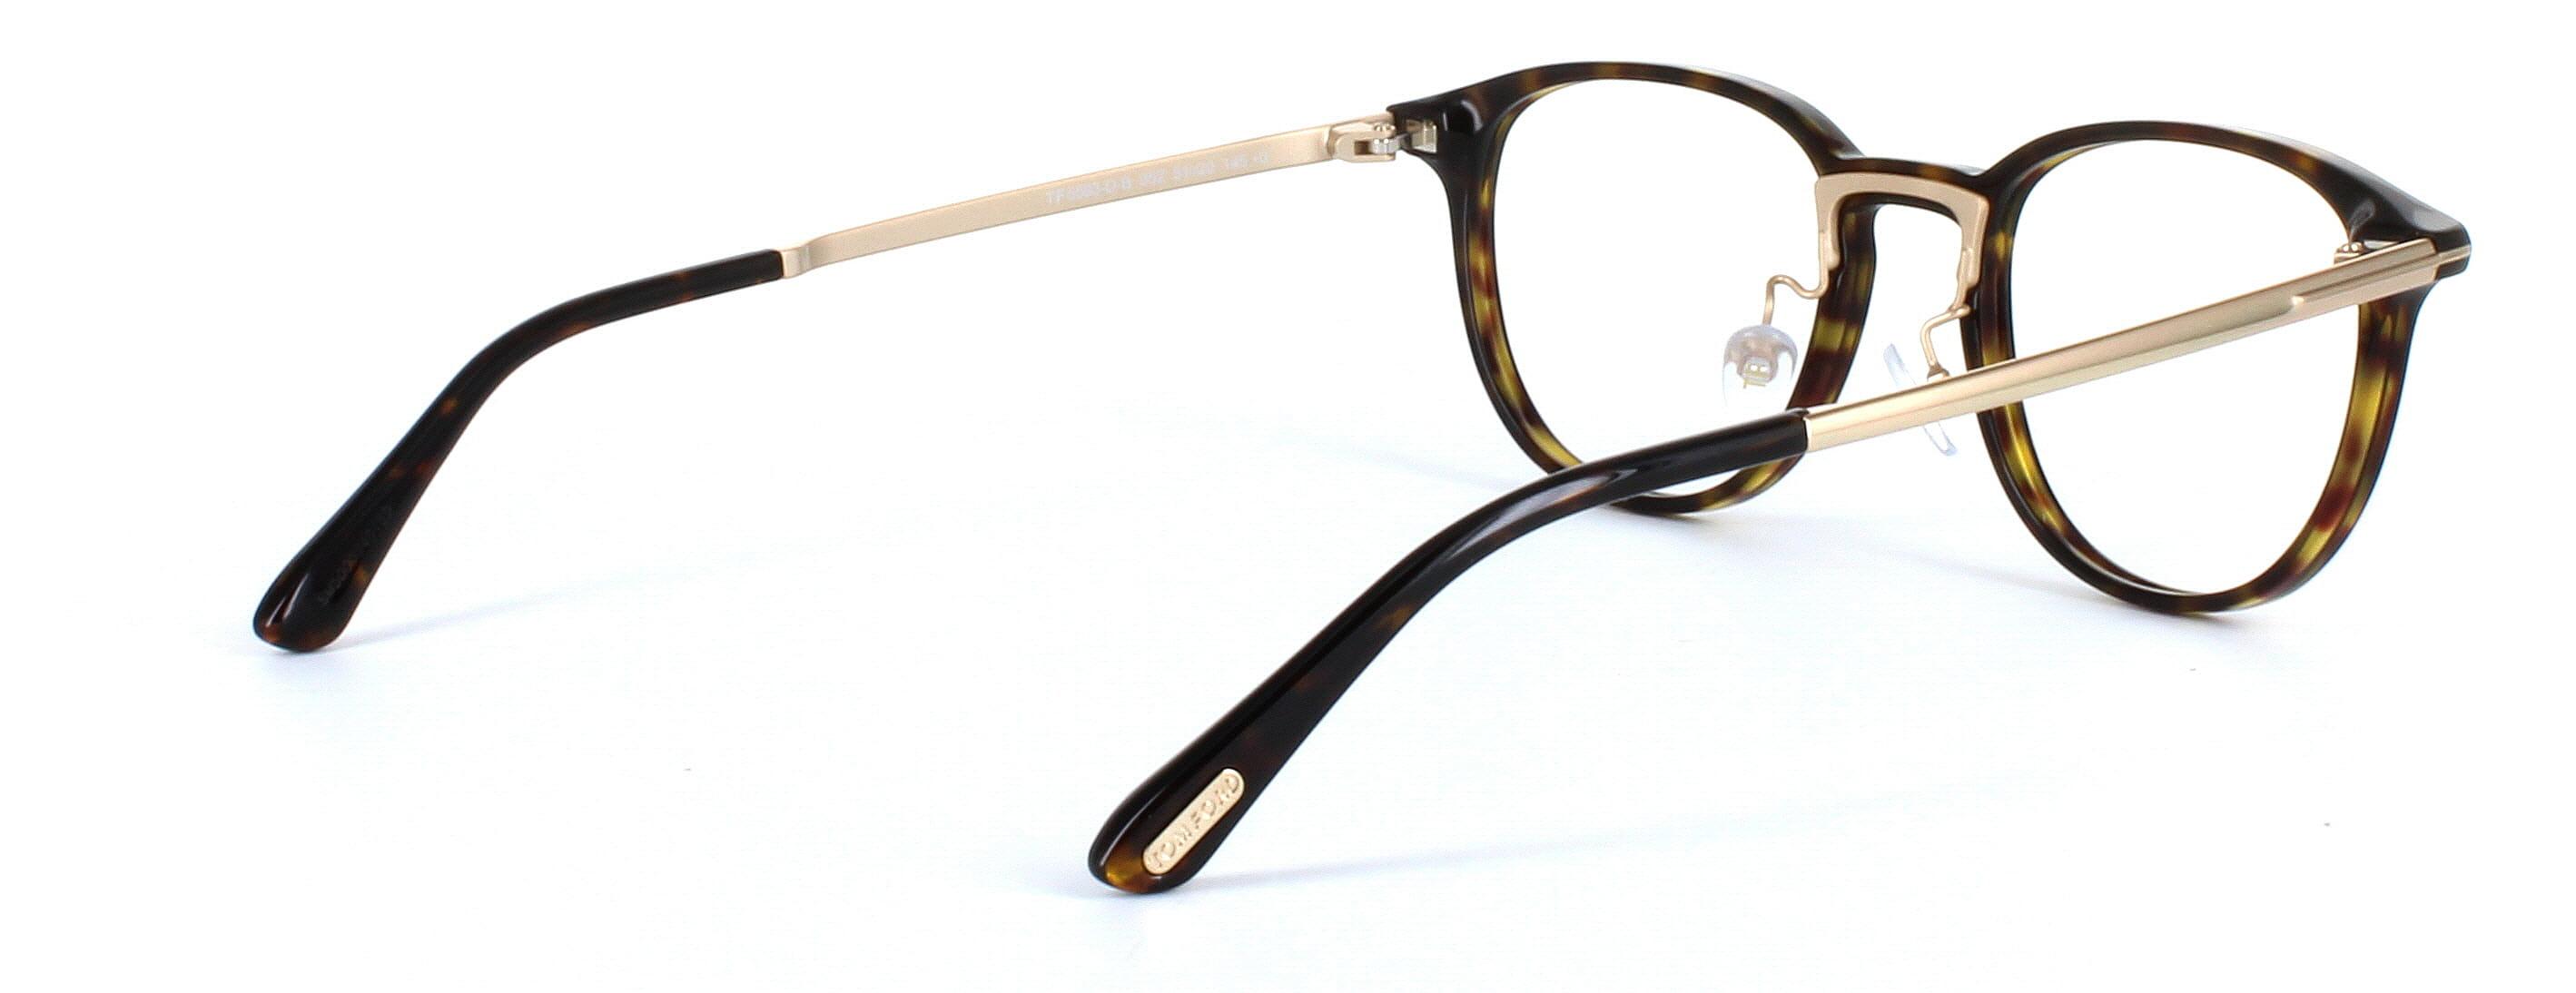 Tom Ford Glasses FT5593 - Tortoise - Image 4